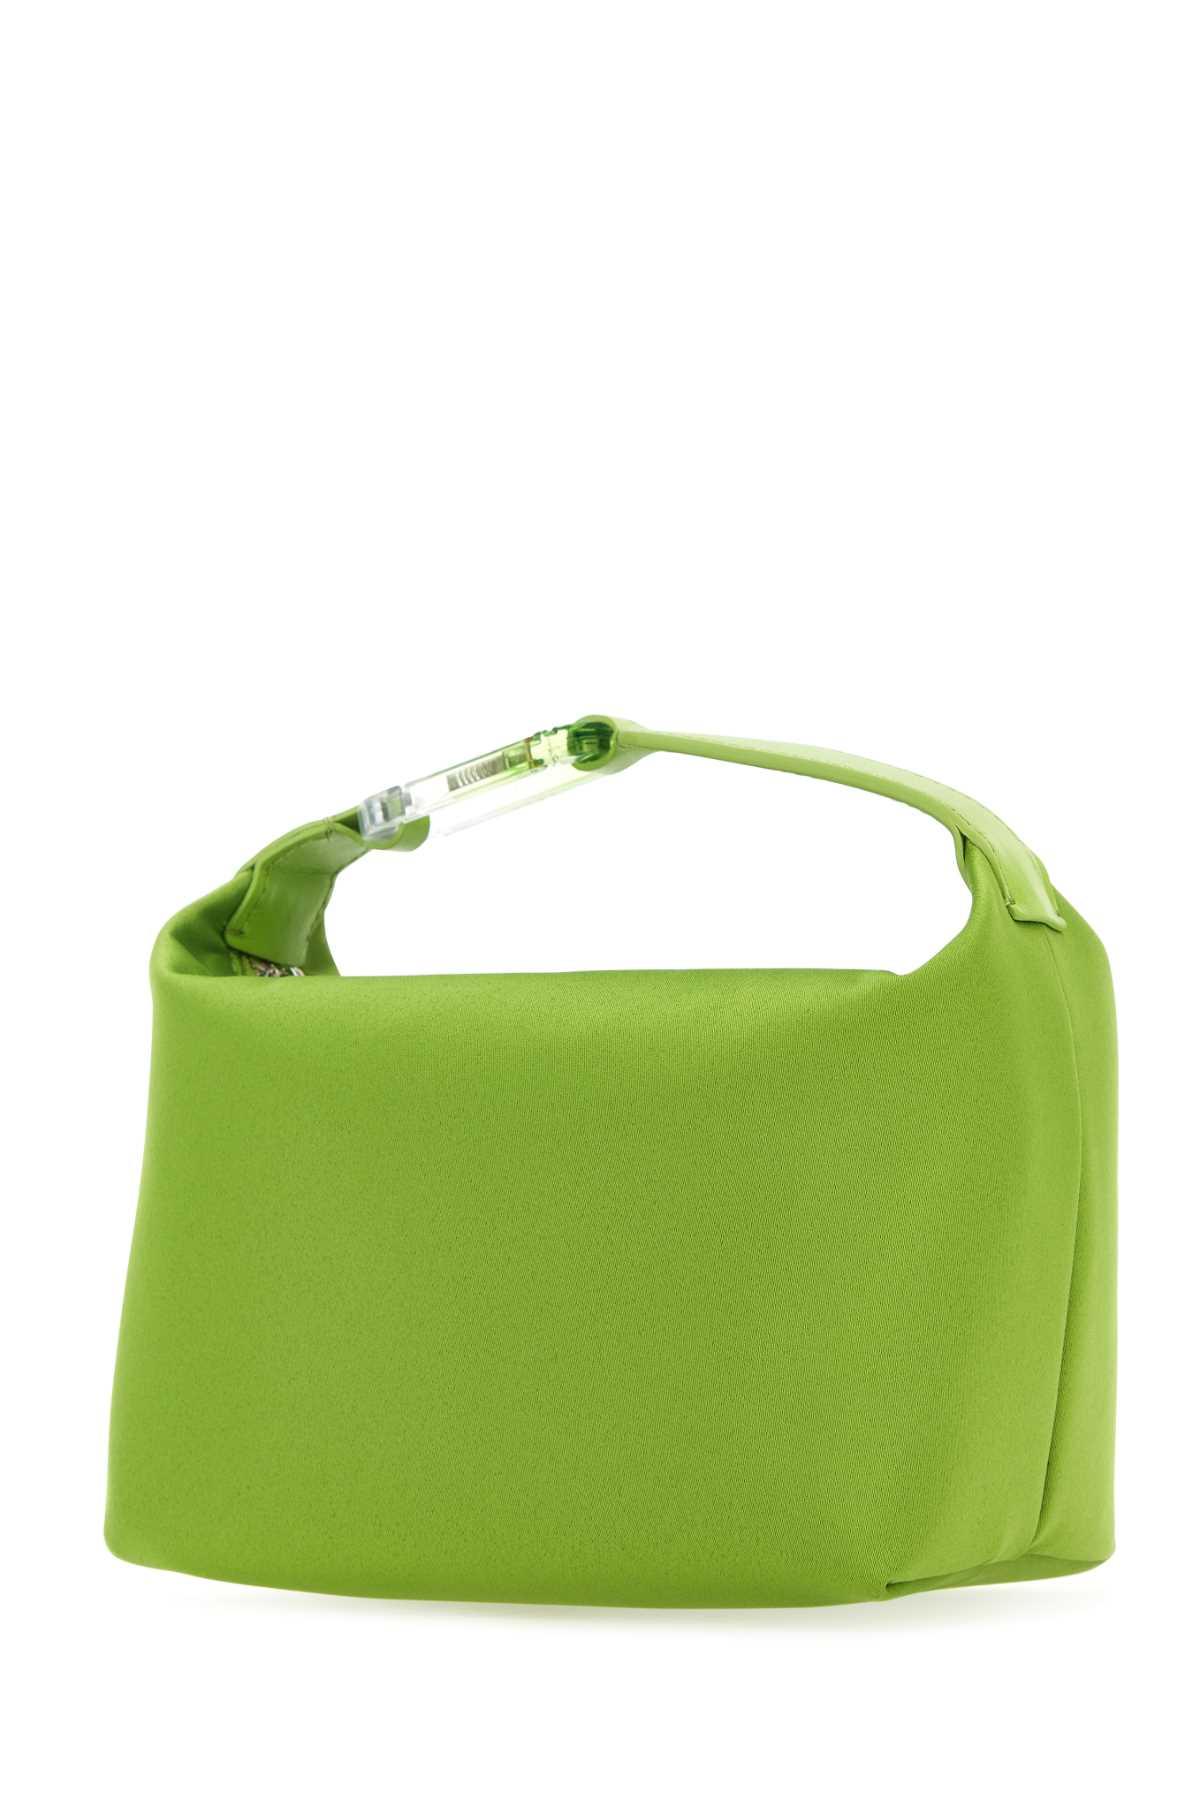 Eéra Green Satin Moonbag Handbag